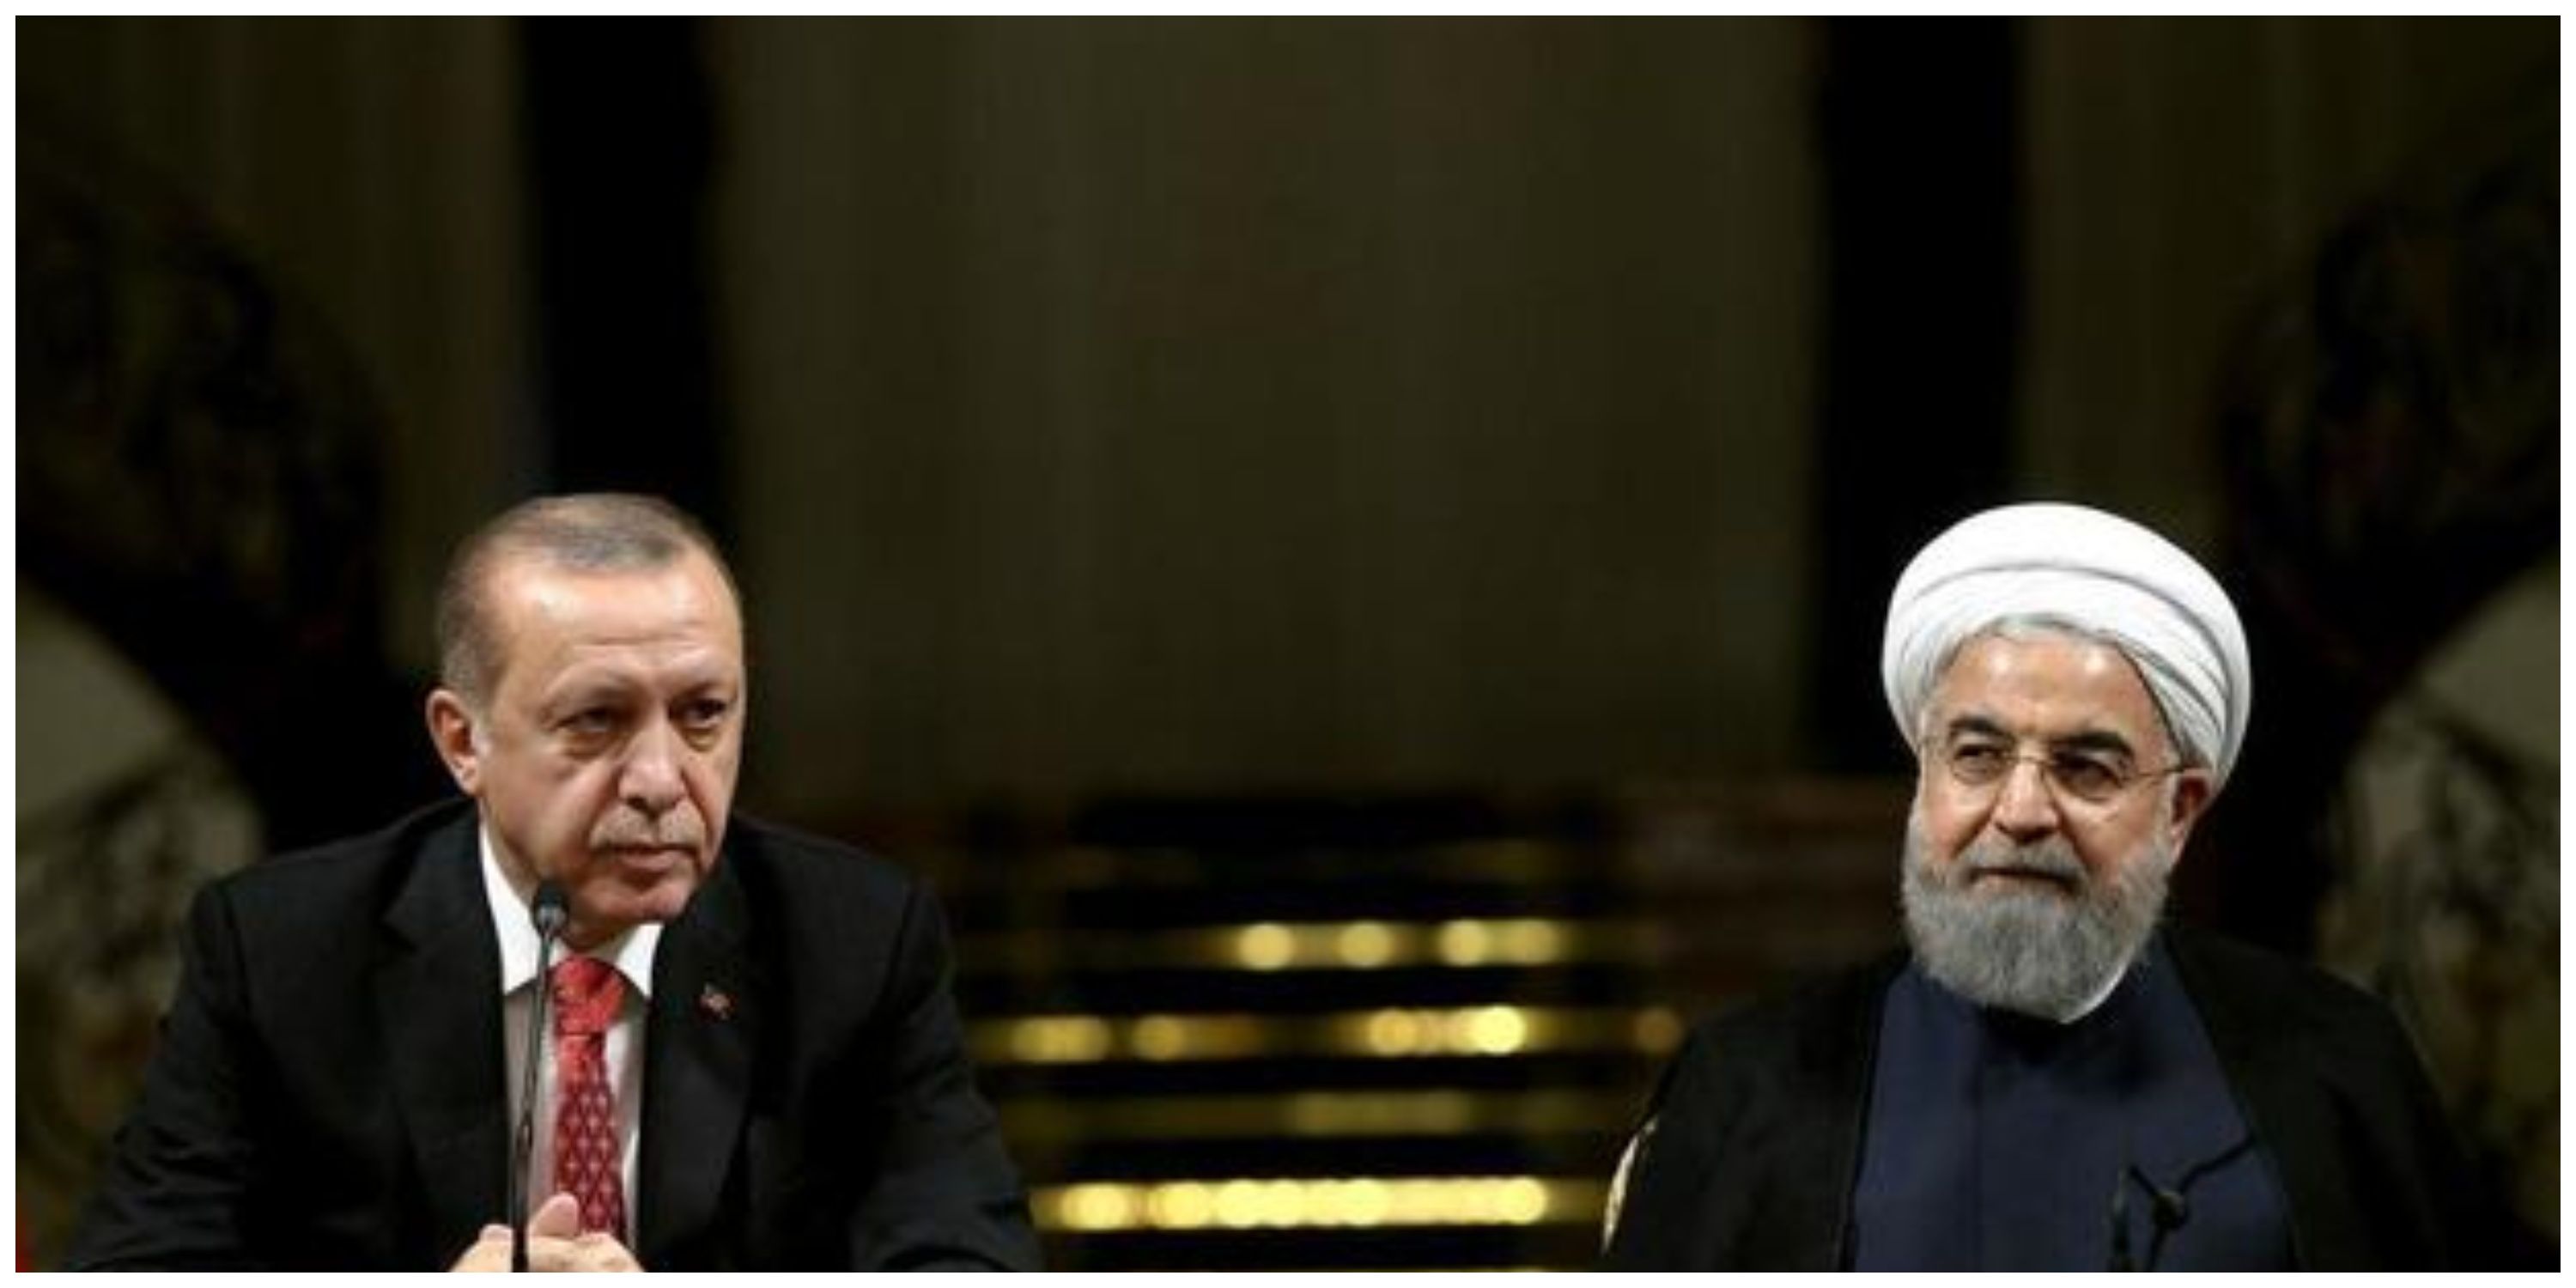 پیام روحانی به اردوغان/  پیروز واقعی این انتخابات مردم و دموکراسی ترکیه هستند